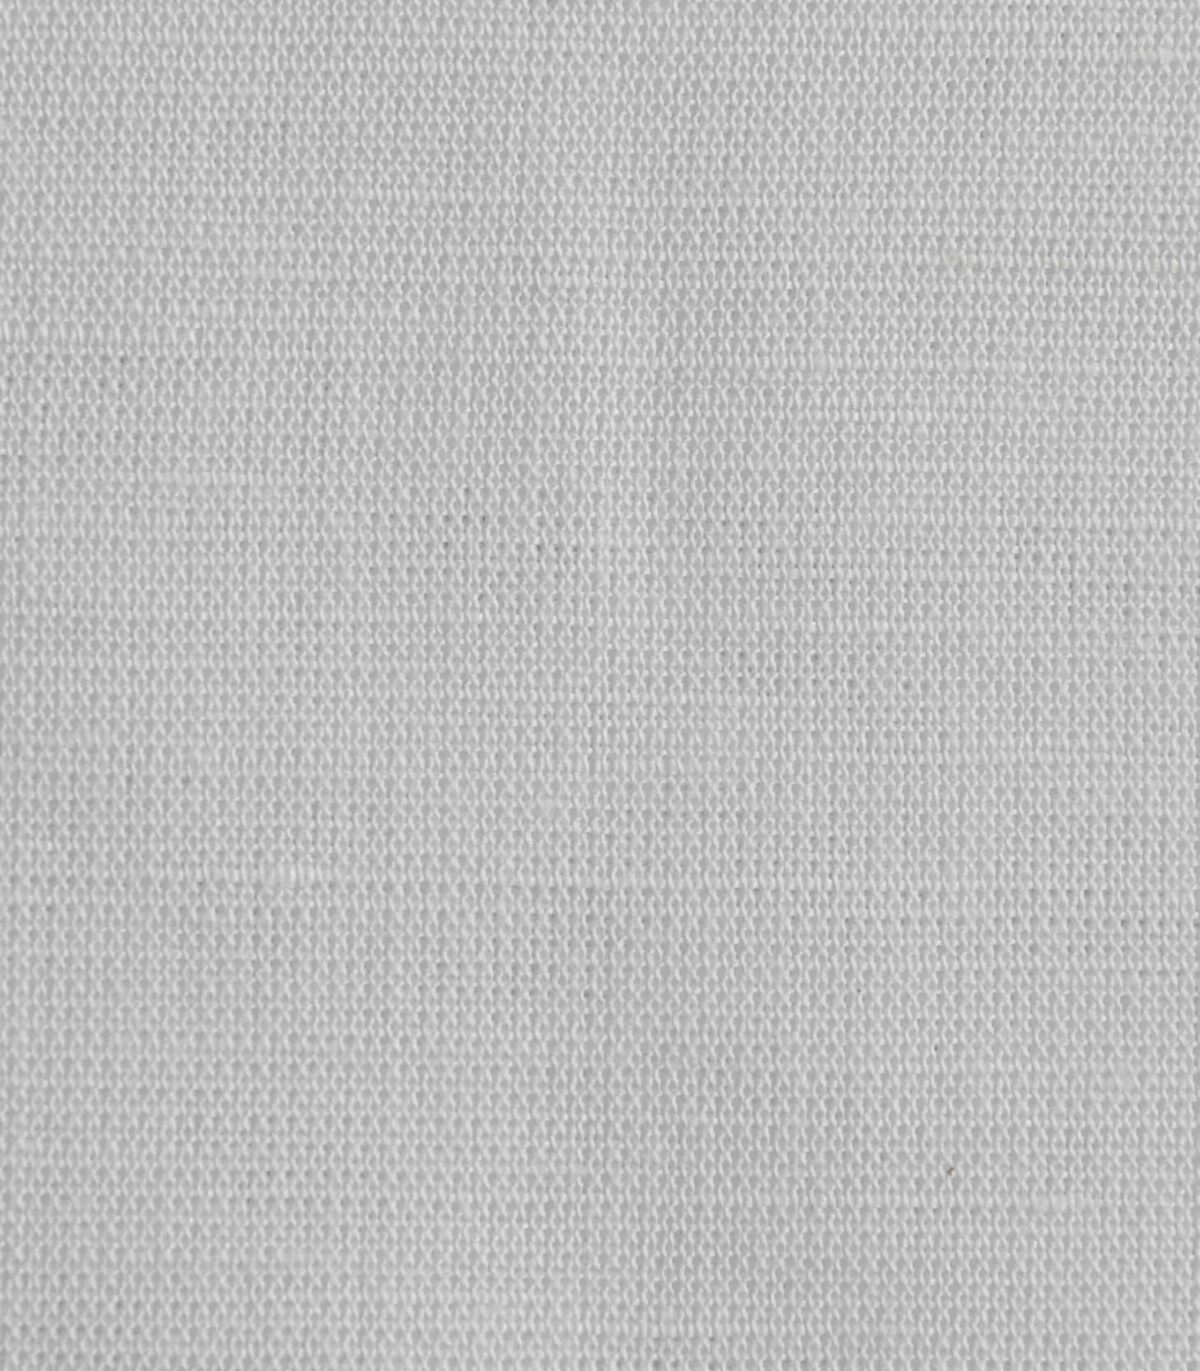 Linen Viscose Lyocell RFD Fabric